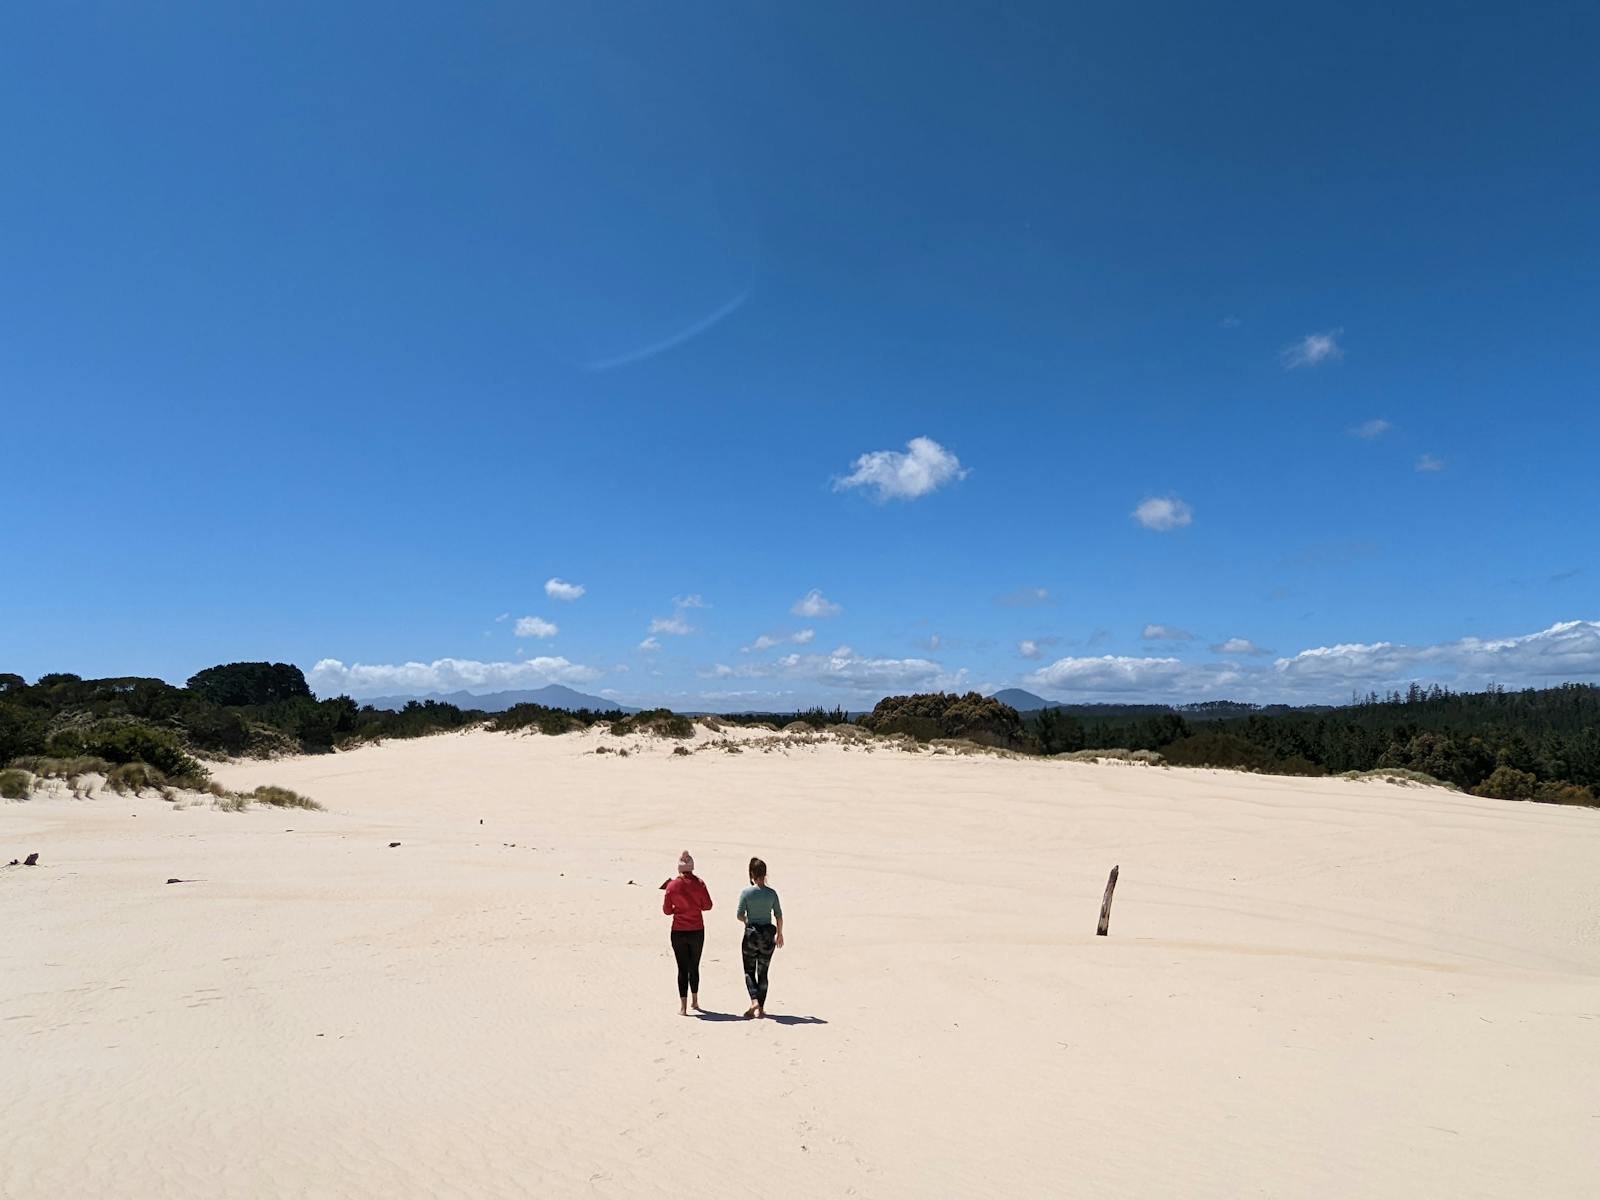 Henty Sand Dunes, West Coast Tasmania